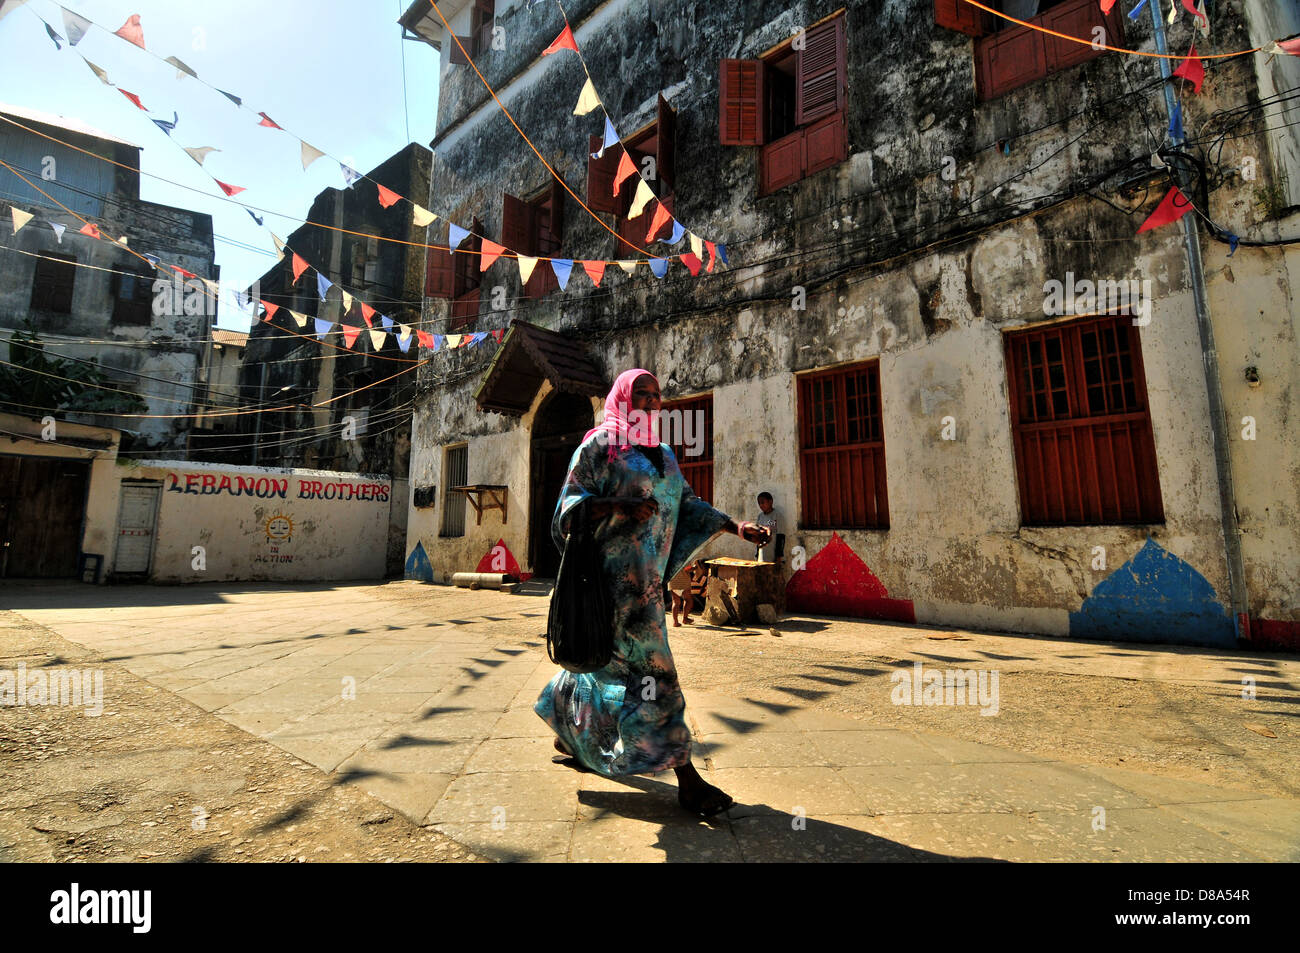 Muslimische jungen Frau zu Fuß in die Fahnen geschmückt Straßen von Stonecity, Zanzibar Stockfoto